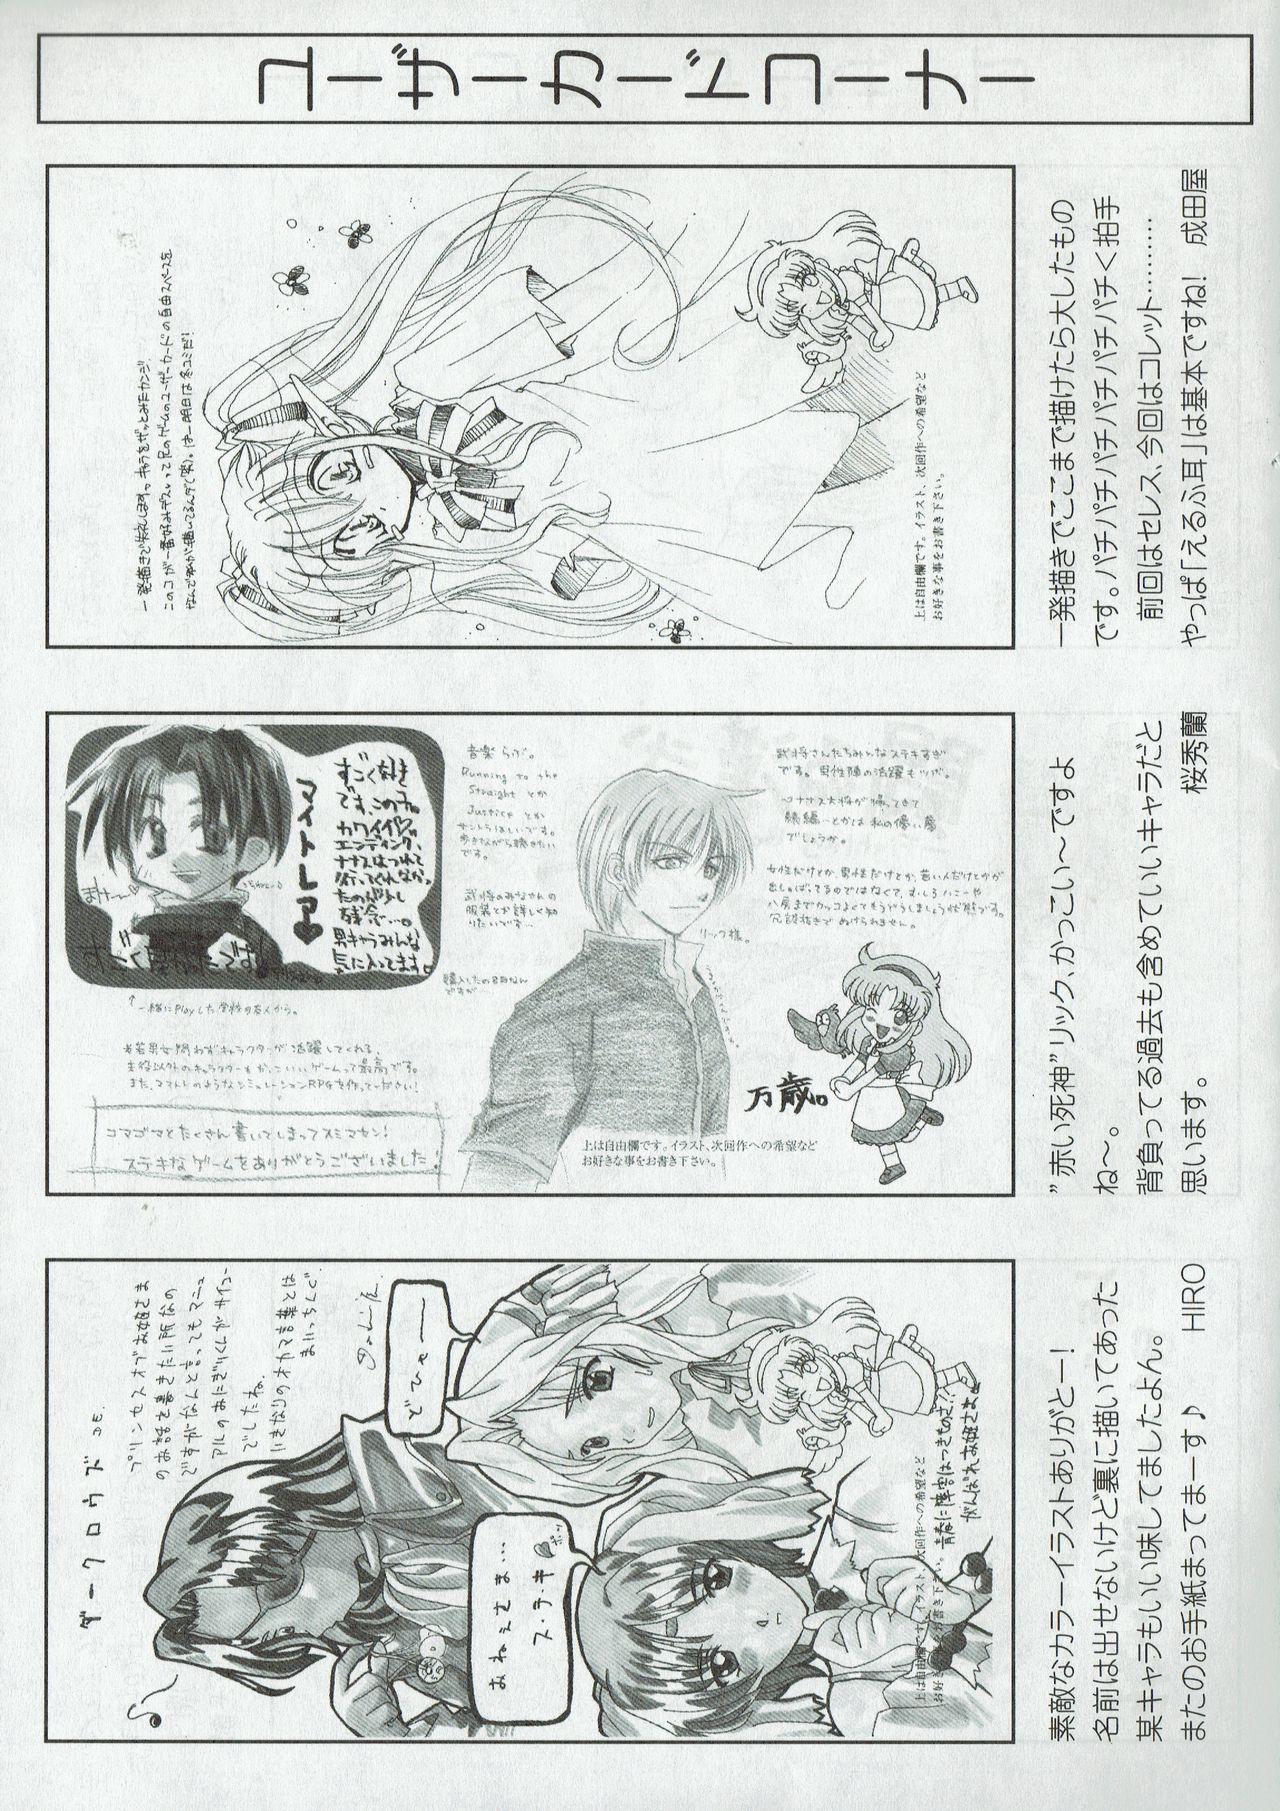 Arisu no Denchi Bakudan Vol. 10 25